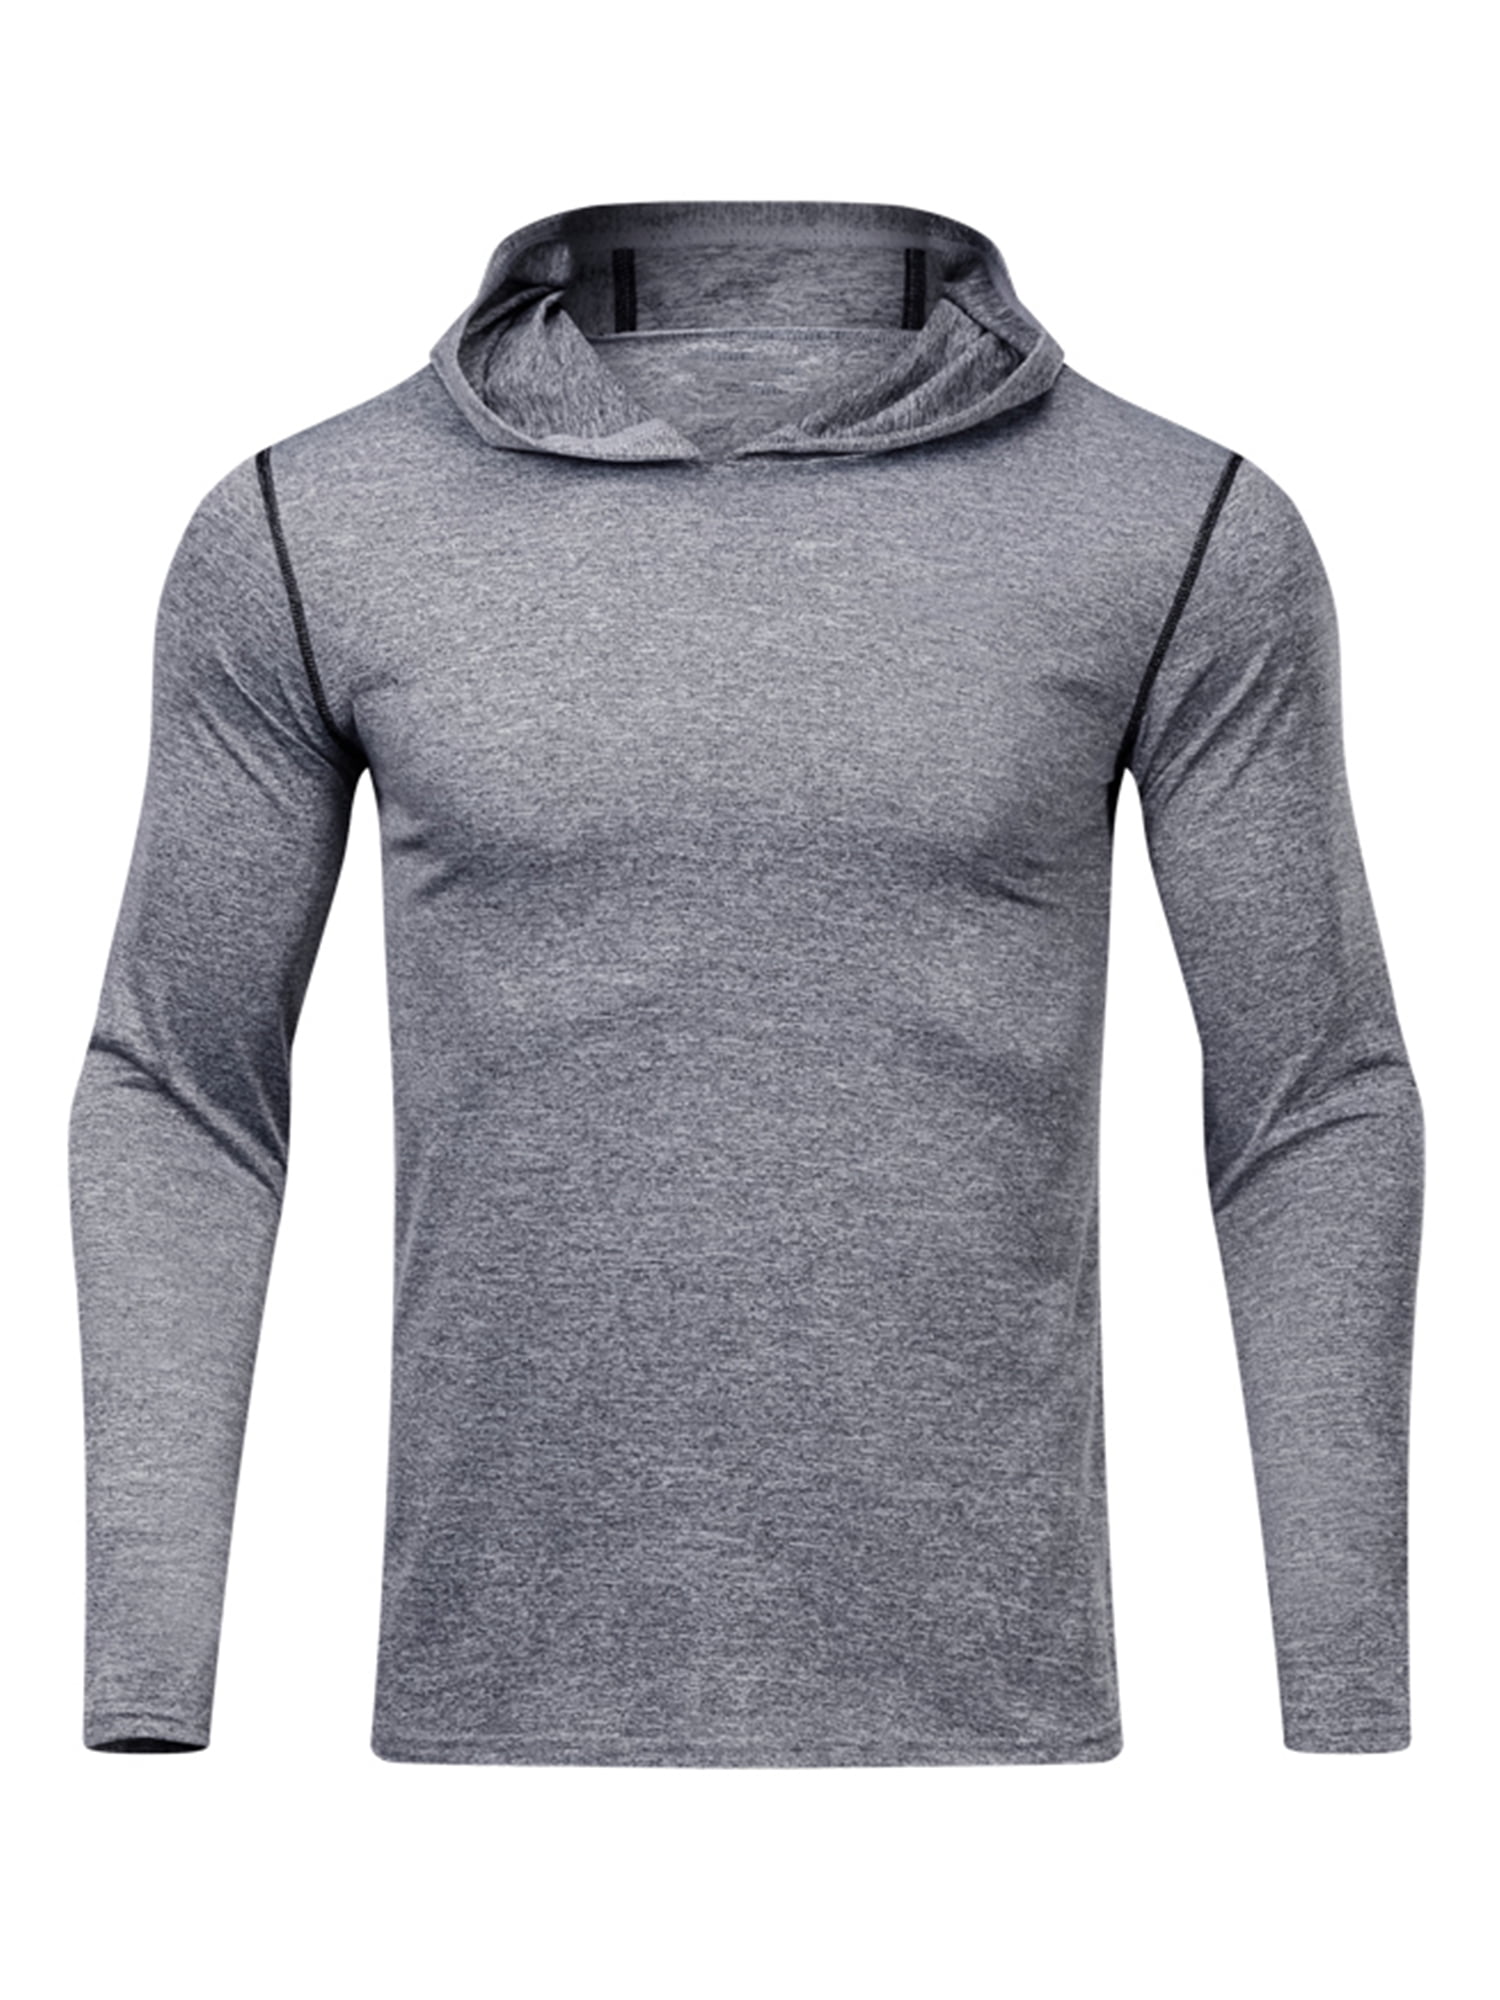 Men 1/4 Zip Hiking Shirt Long Sleeve Athletic Shirt Lightweight Outdoor Pullover